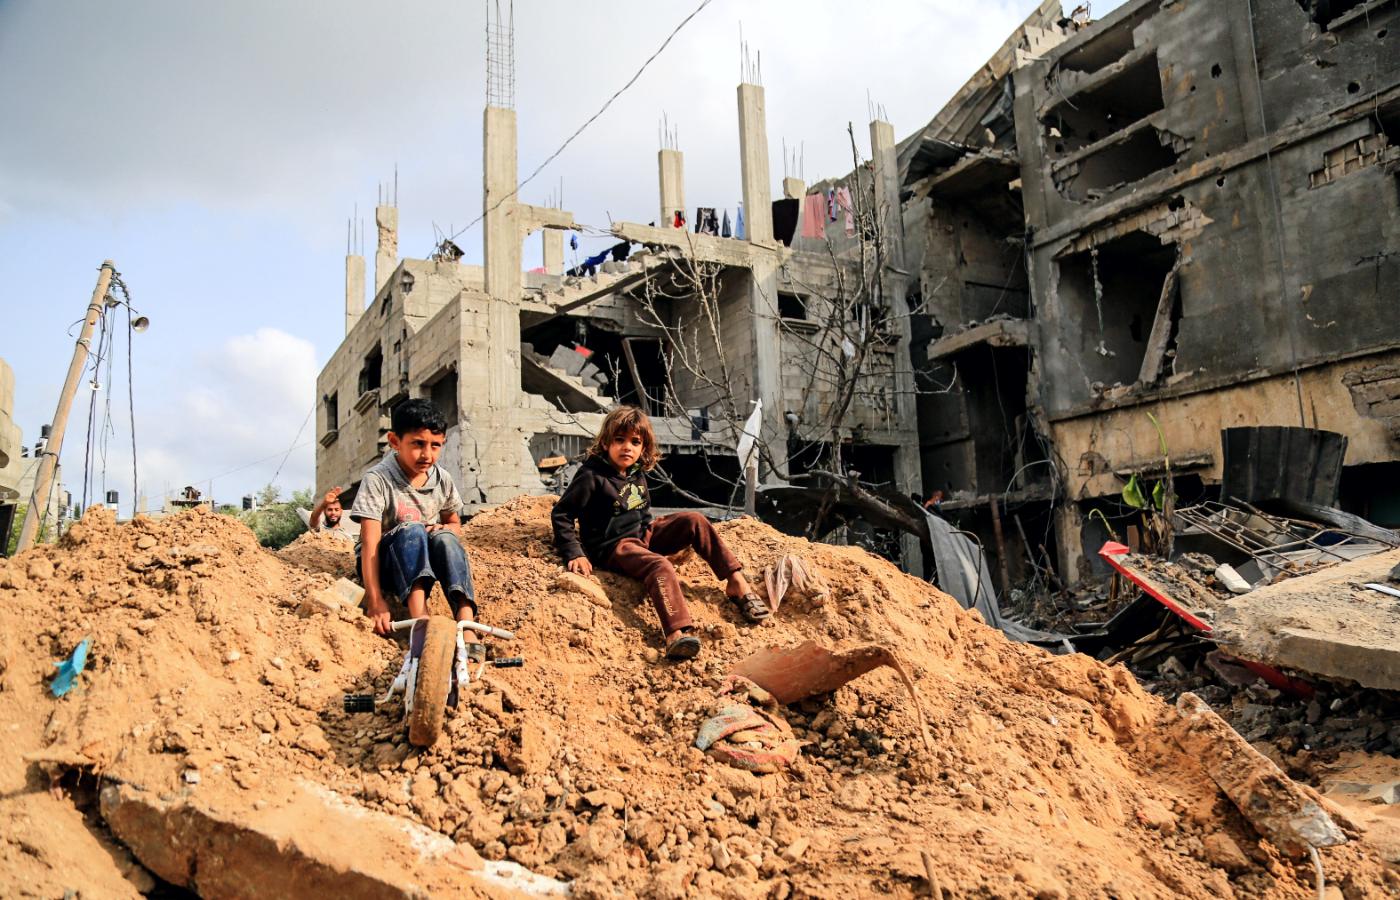 Bajt Hanun na północ od Strefy Gazy. Zniszczenia po paru dniach wojny Hamasu z Izraelem